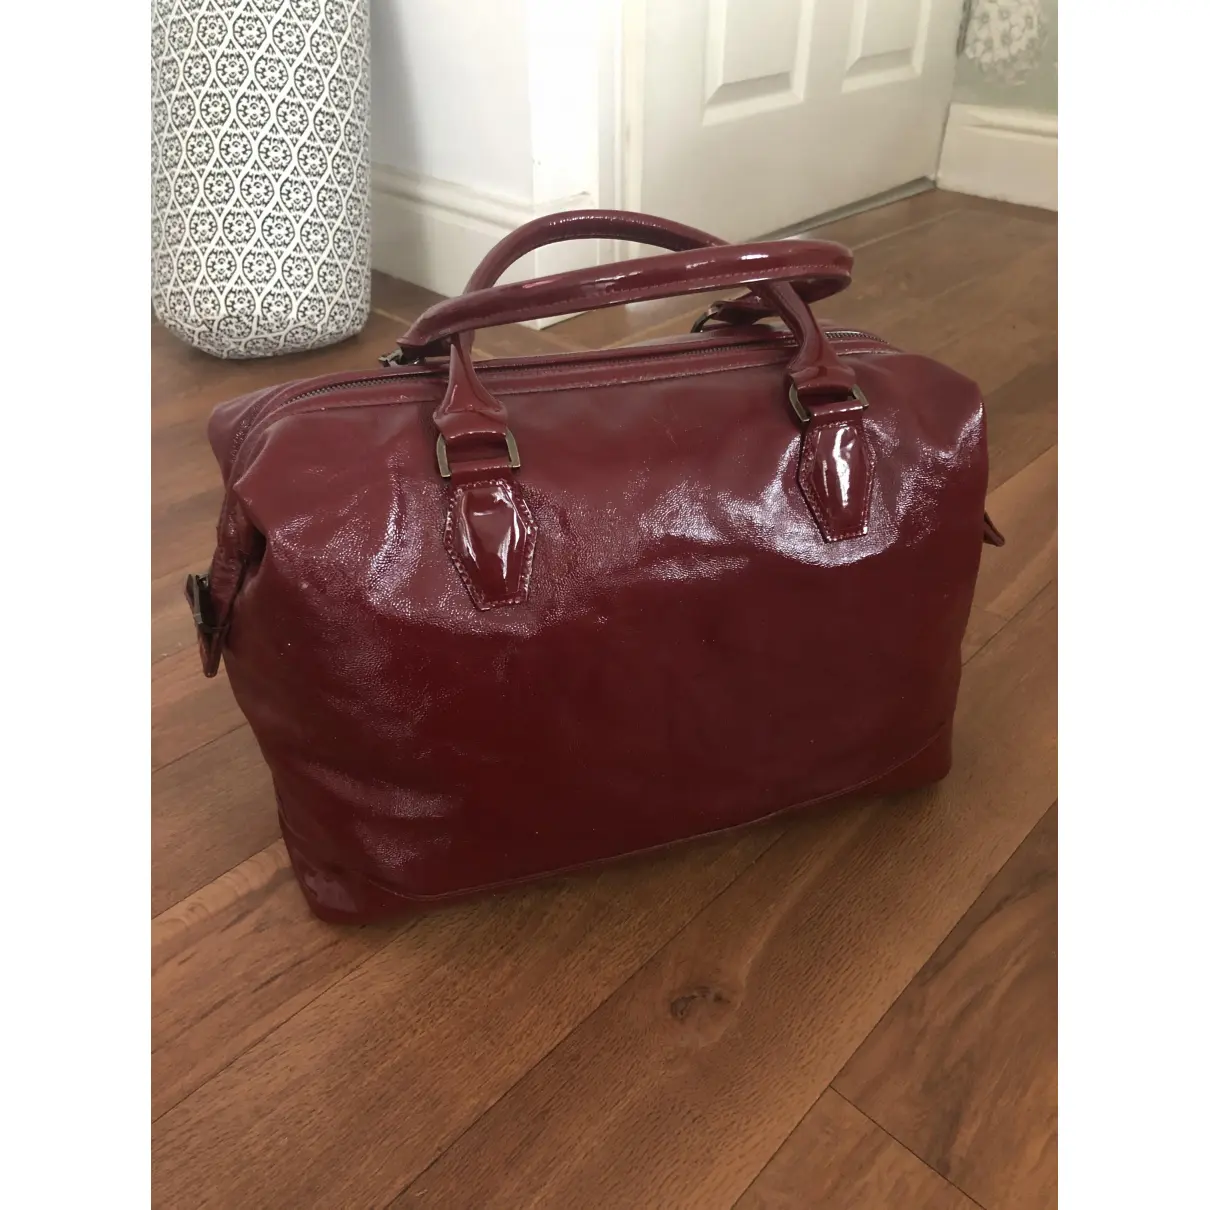 Buy Longchamp Légende leather bowling bag online